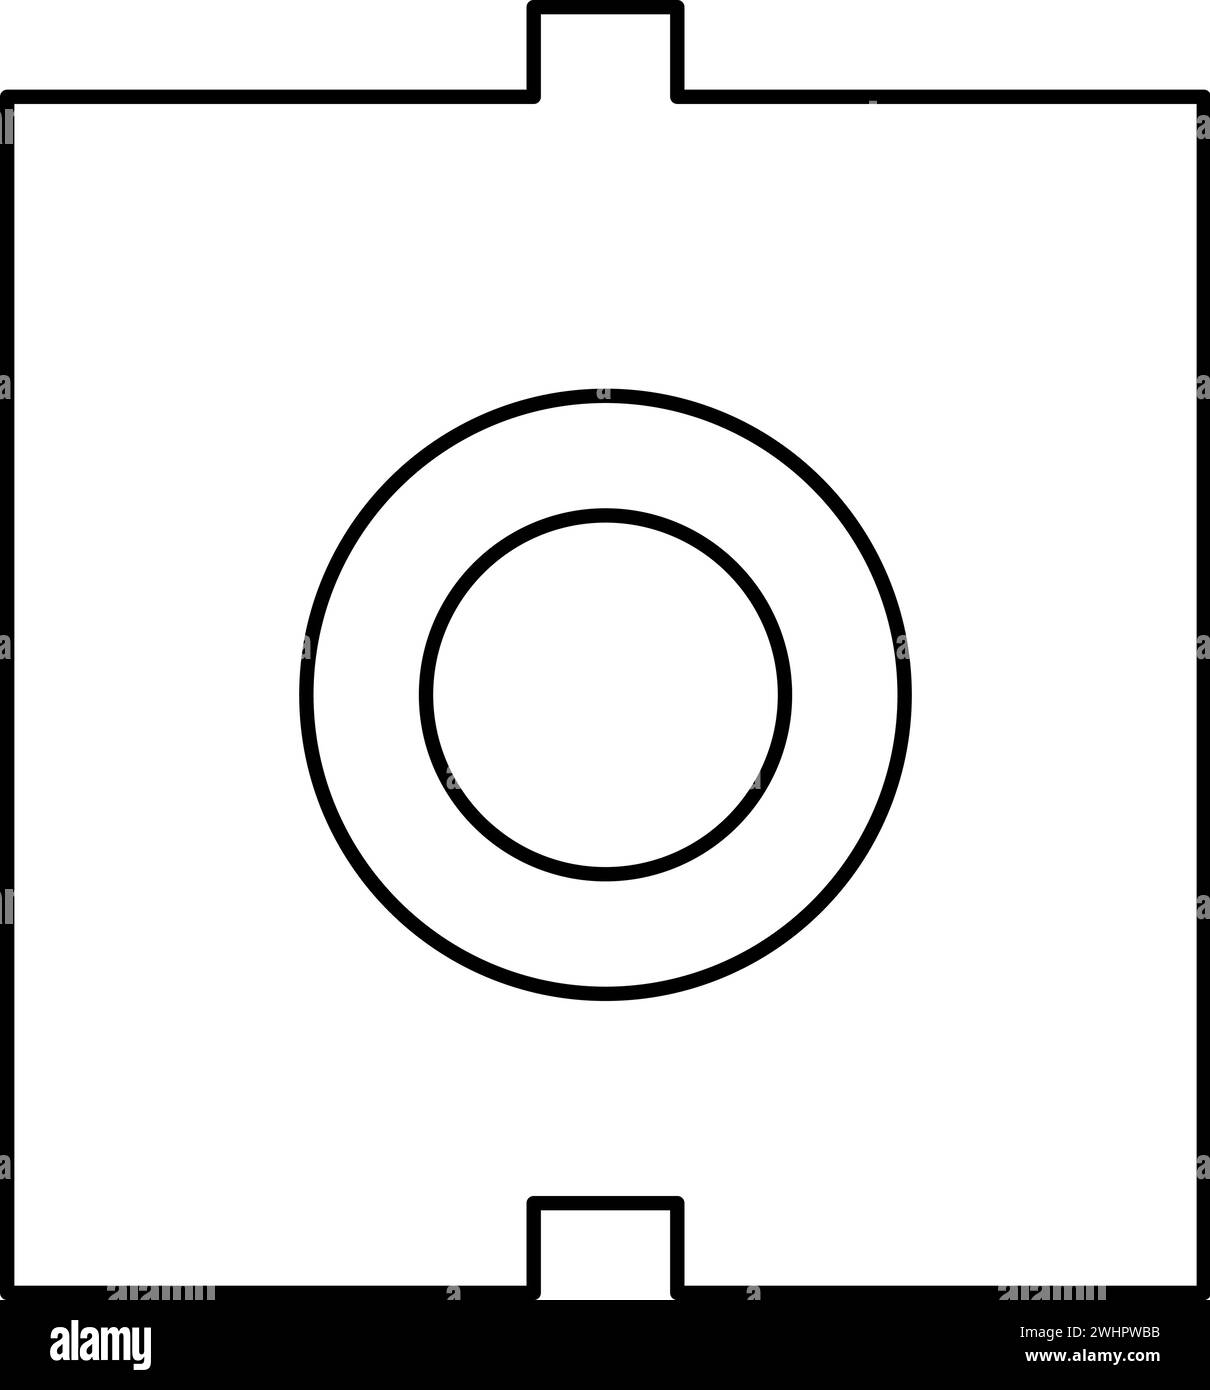 Porta del connettore ottico cavo in fibra ottica icona del contorno del fascio laser icona del vettore di colore nero immagine sottile e piatta semplice Illustrazione Vettoriale